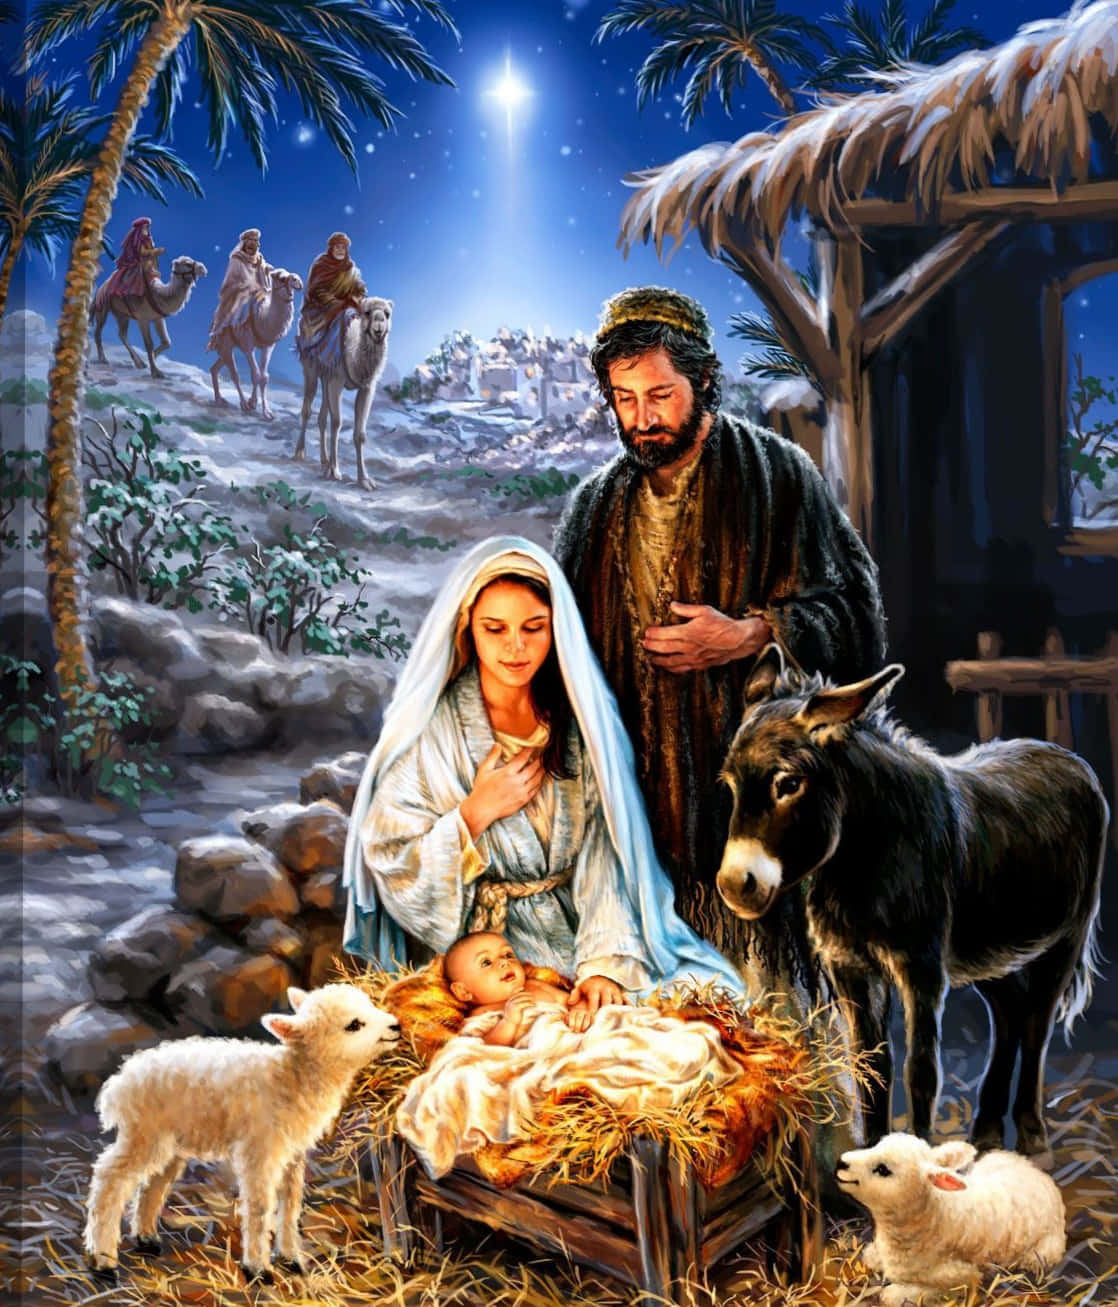 Attfira Miraklet Av Jesu Födelse